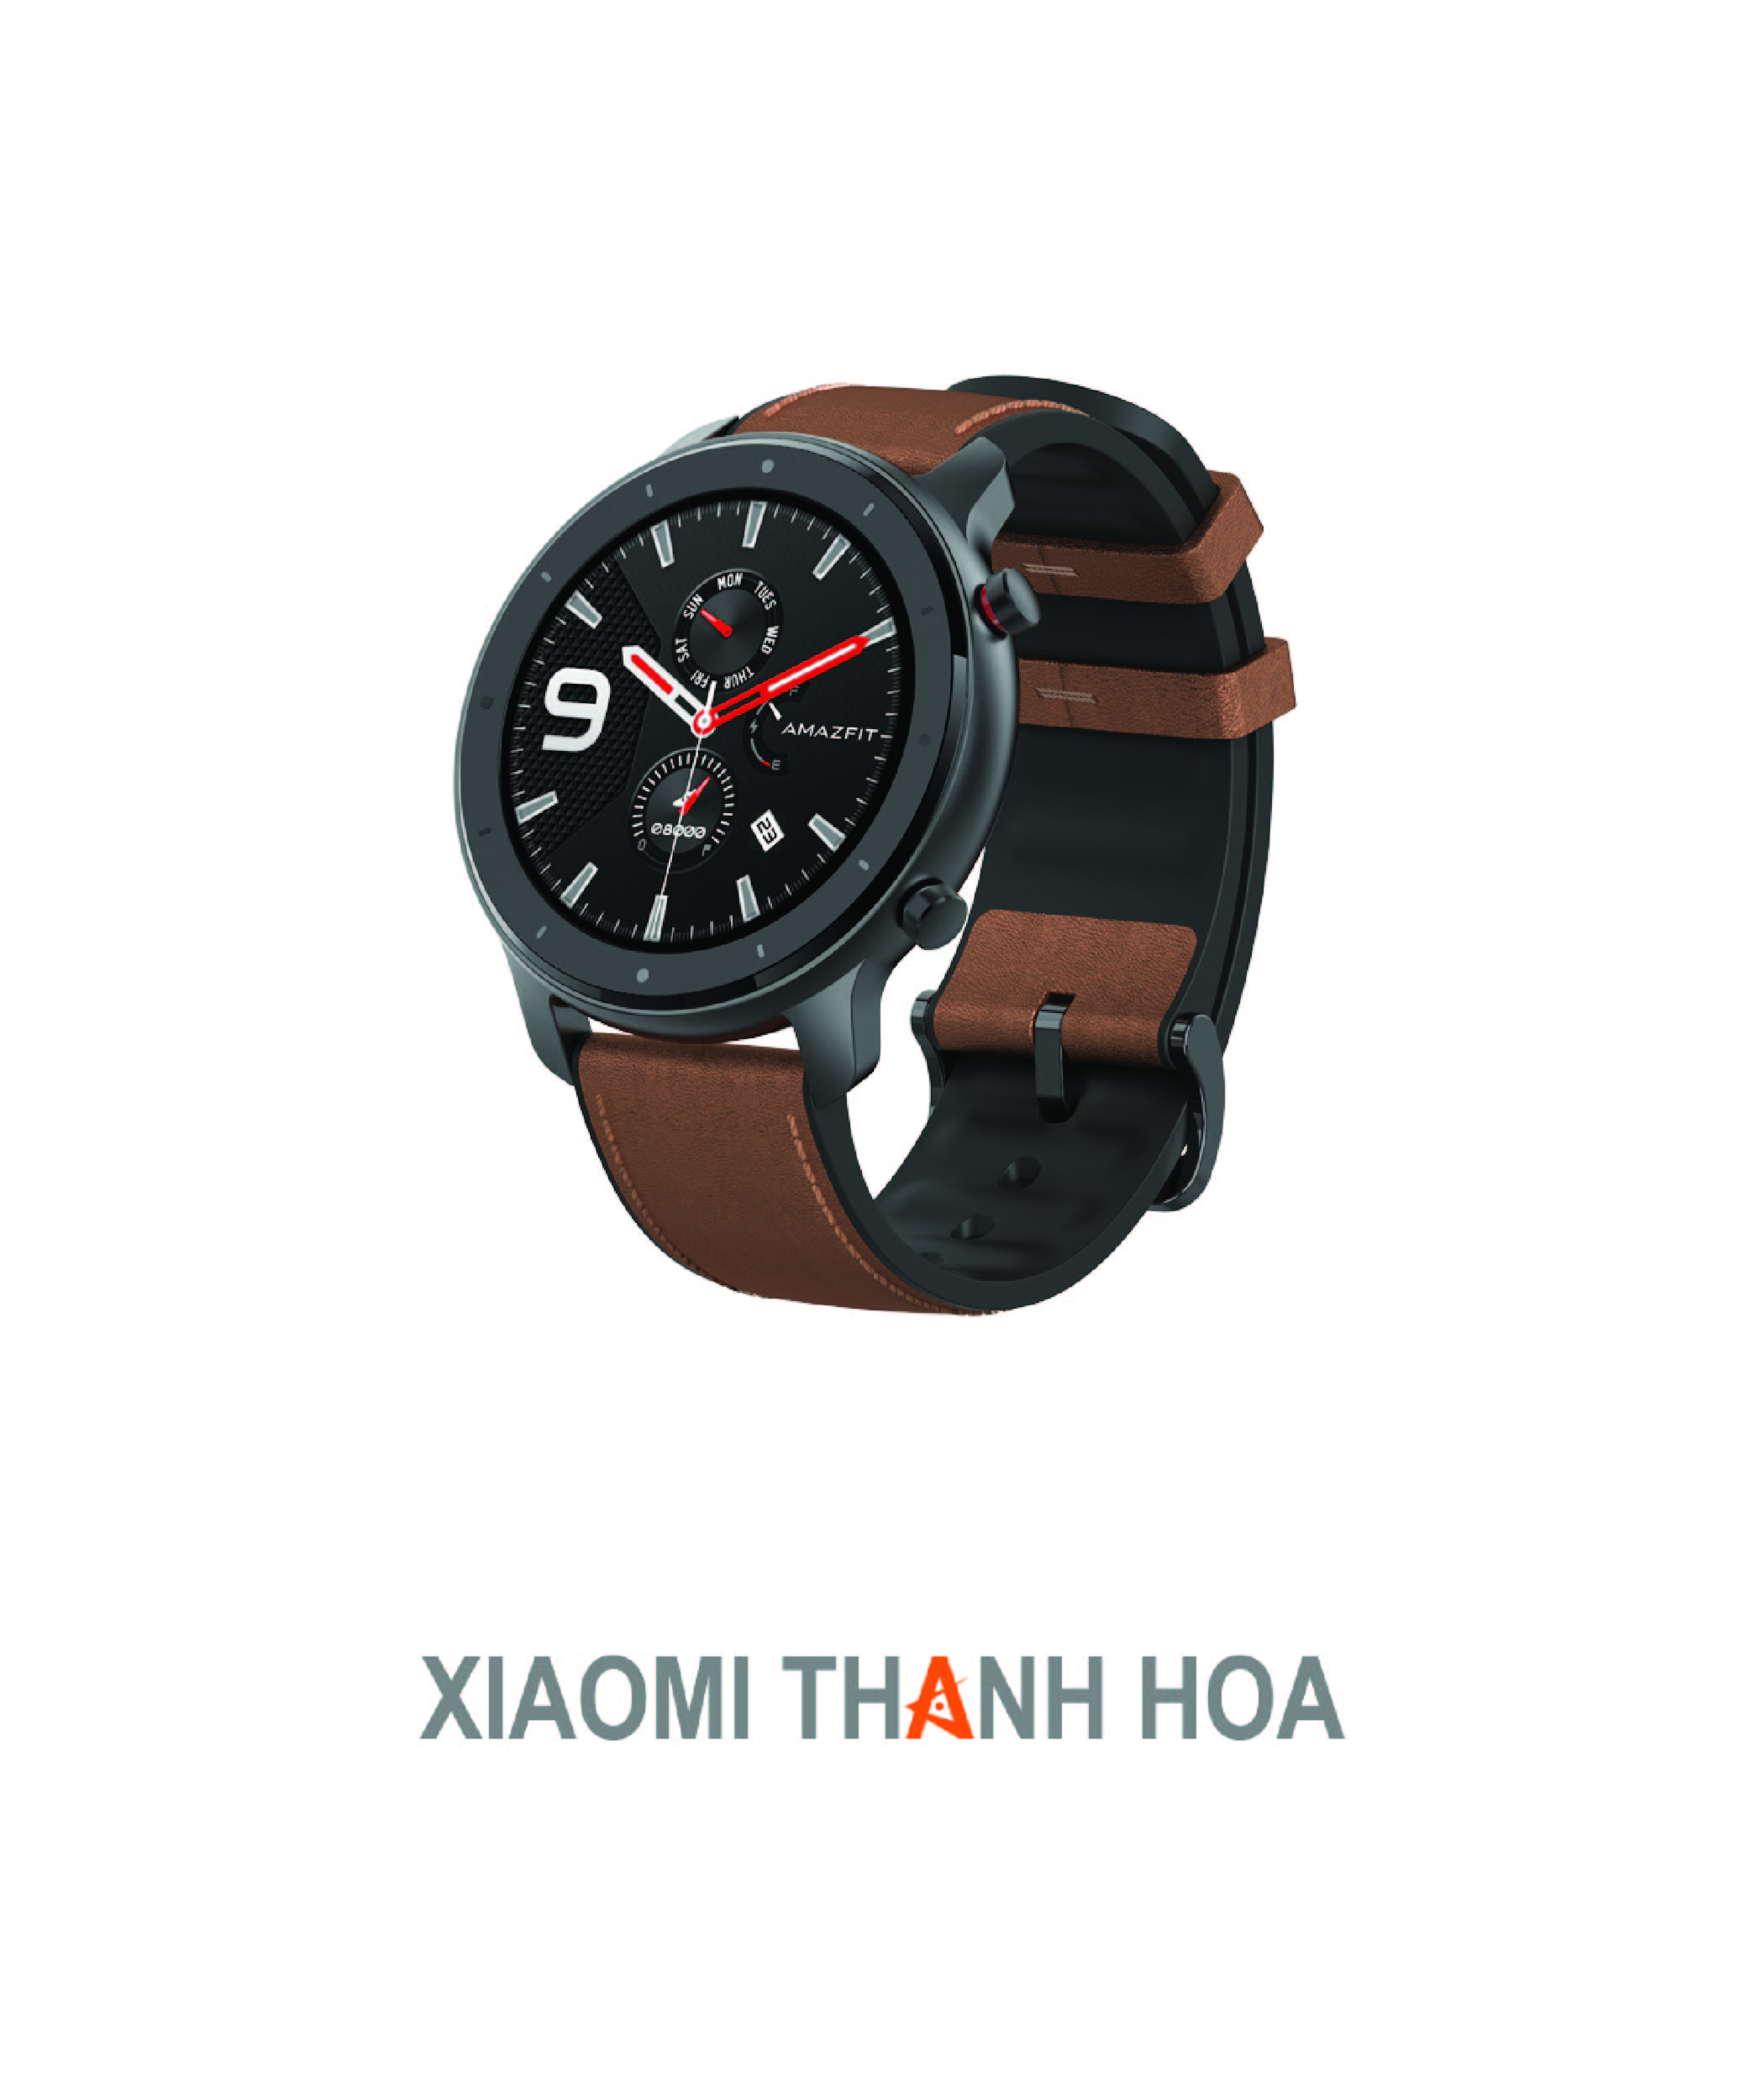 Khám phá các tính năng tuyệt vời của đồng hồ thông minh Xiaomi